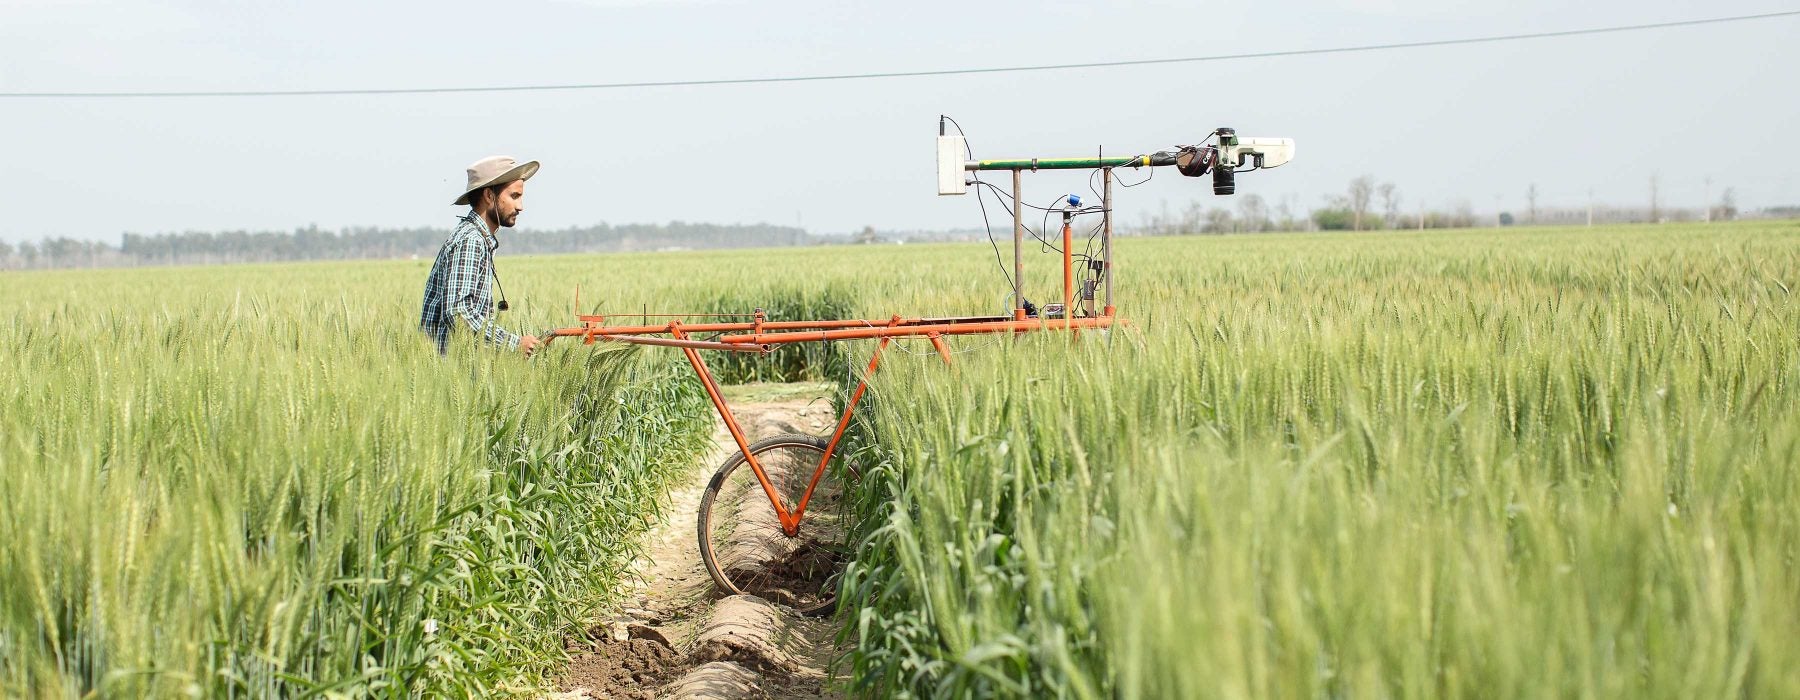 Man guiding farm equipment across crops